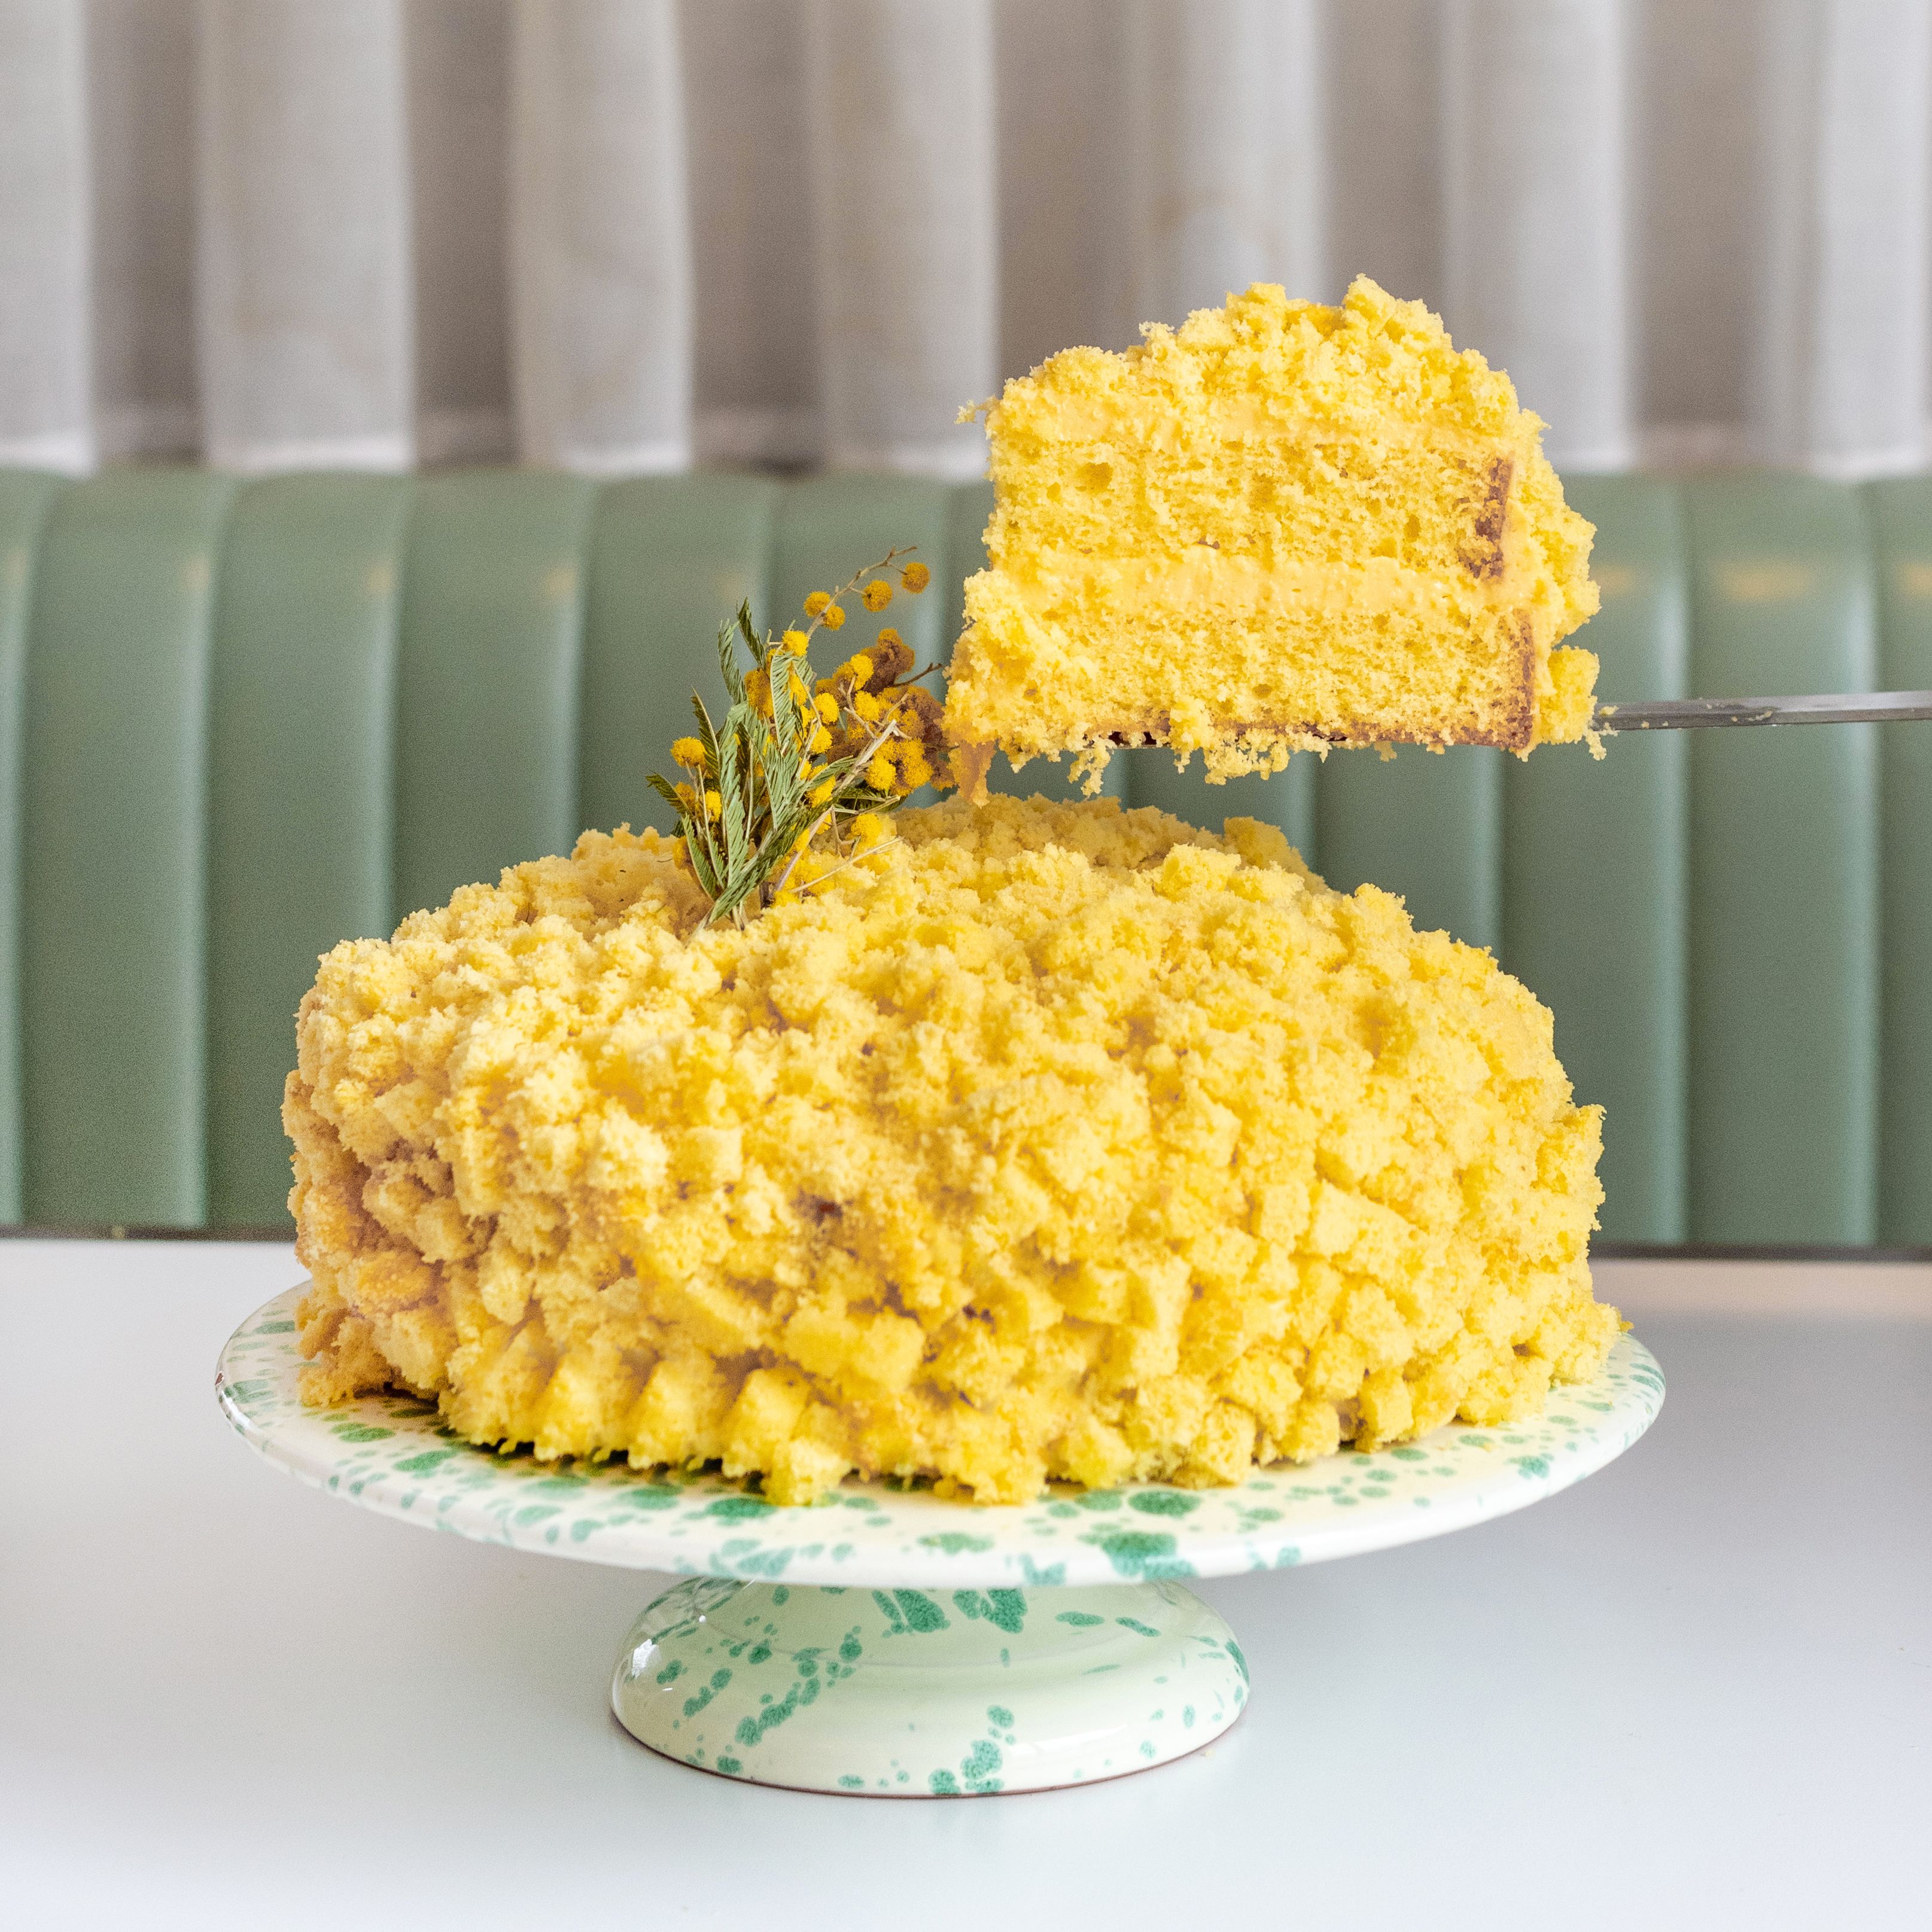 bespoke wedding cakes london – Etoile Bakery